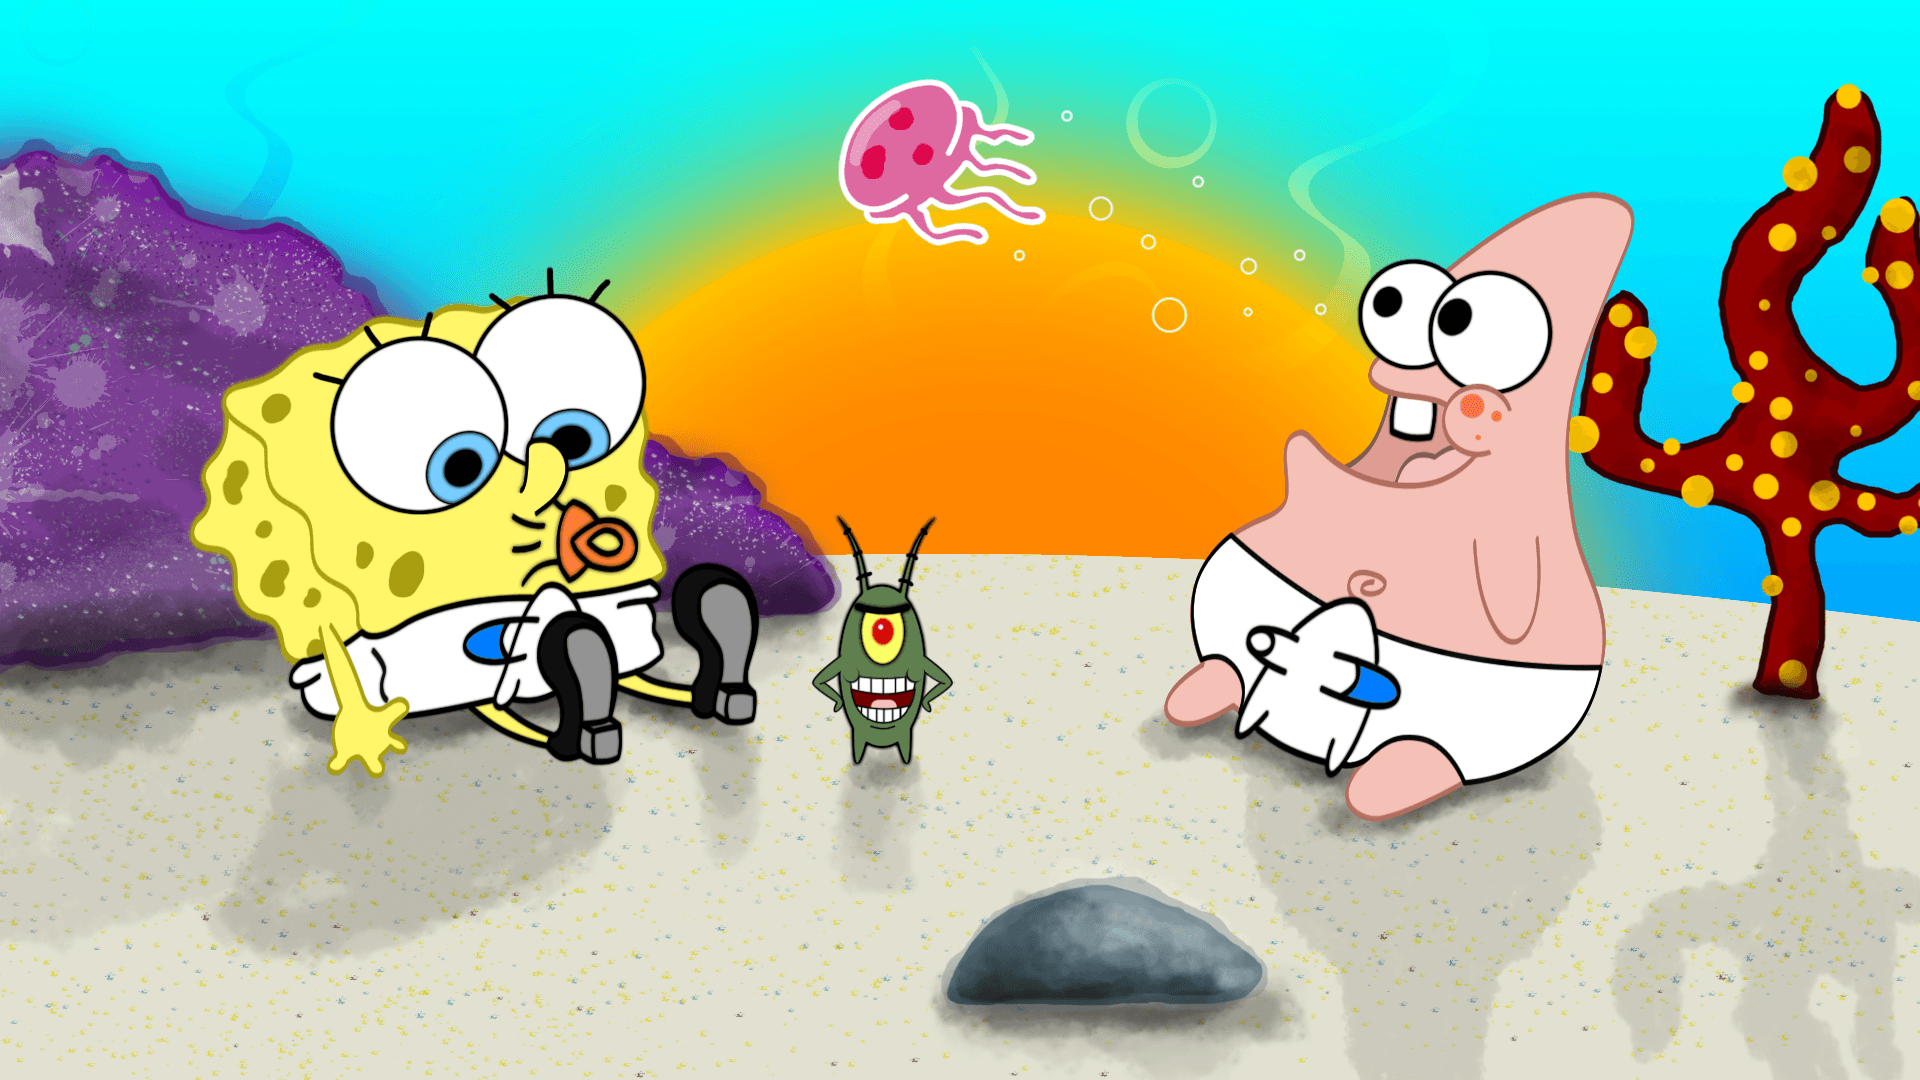 spongebob baby drawings